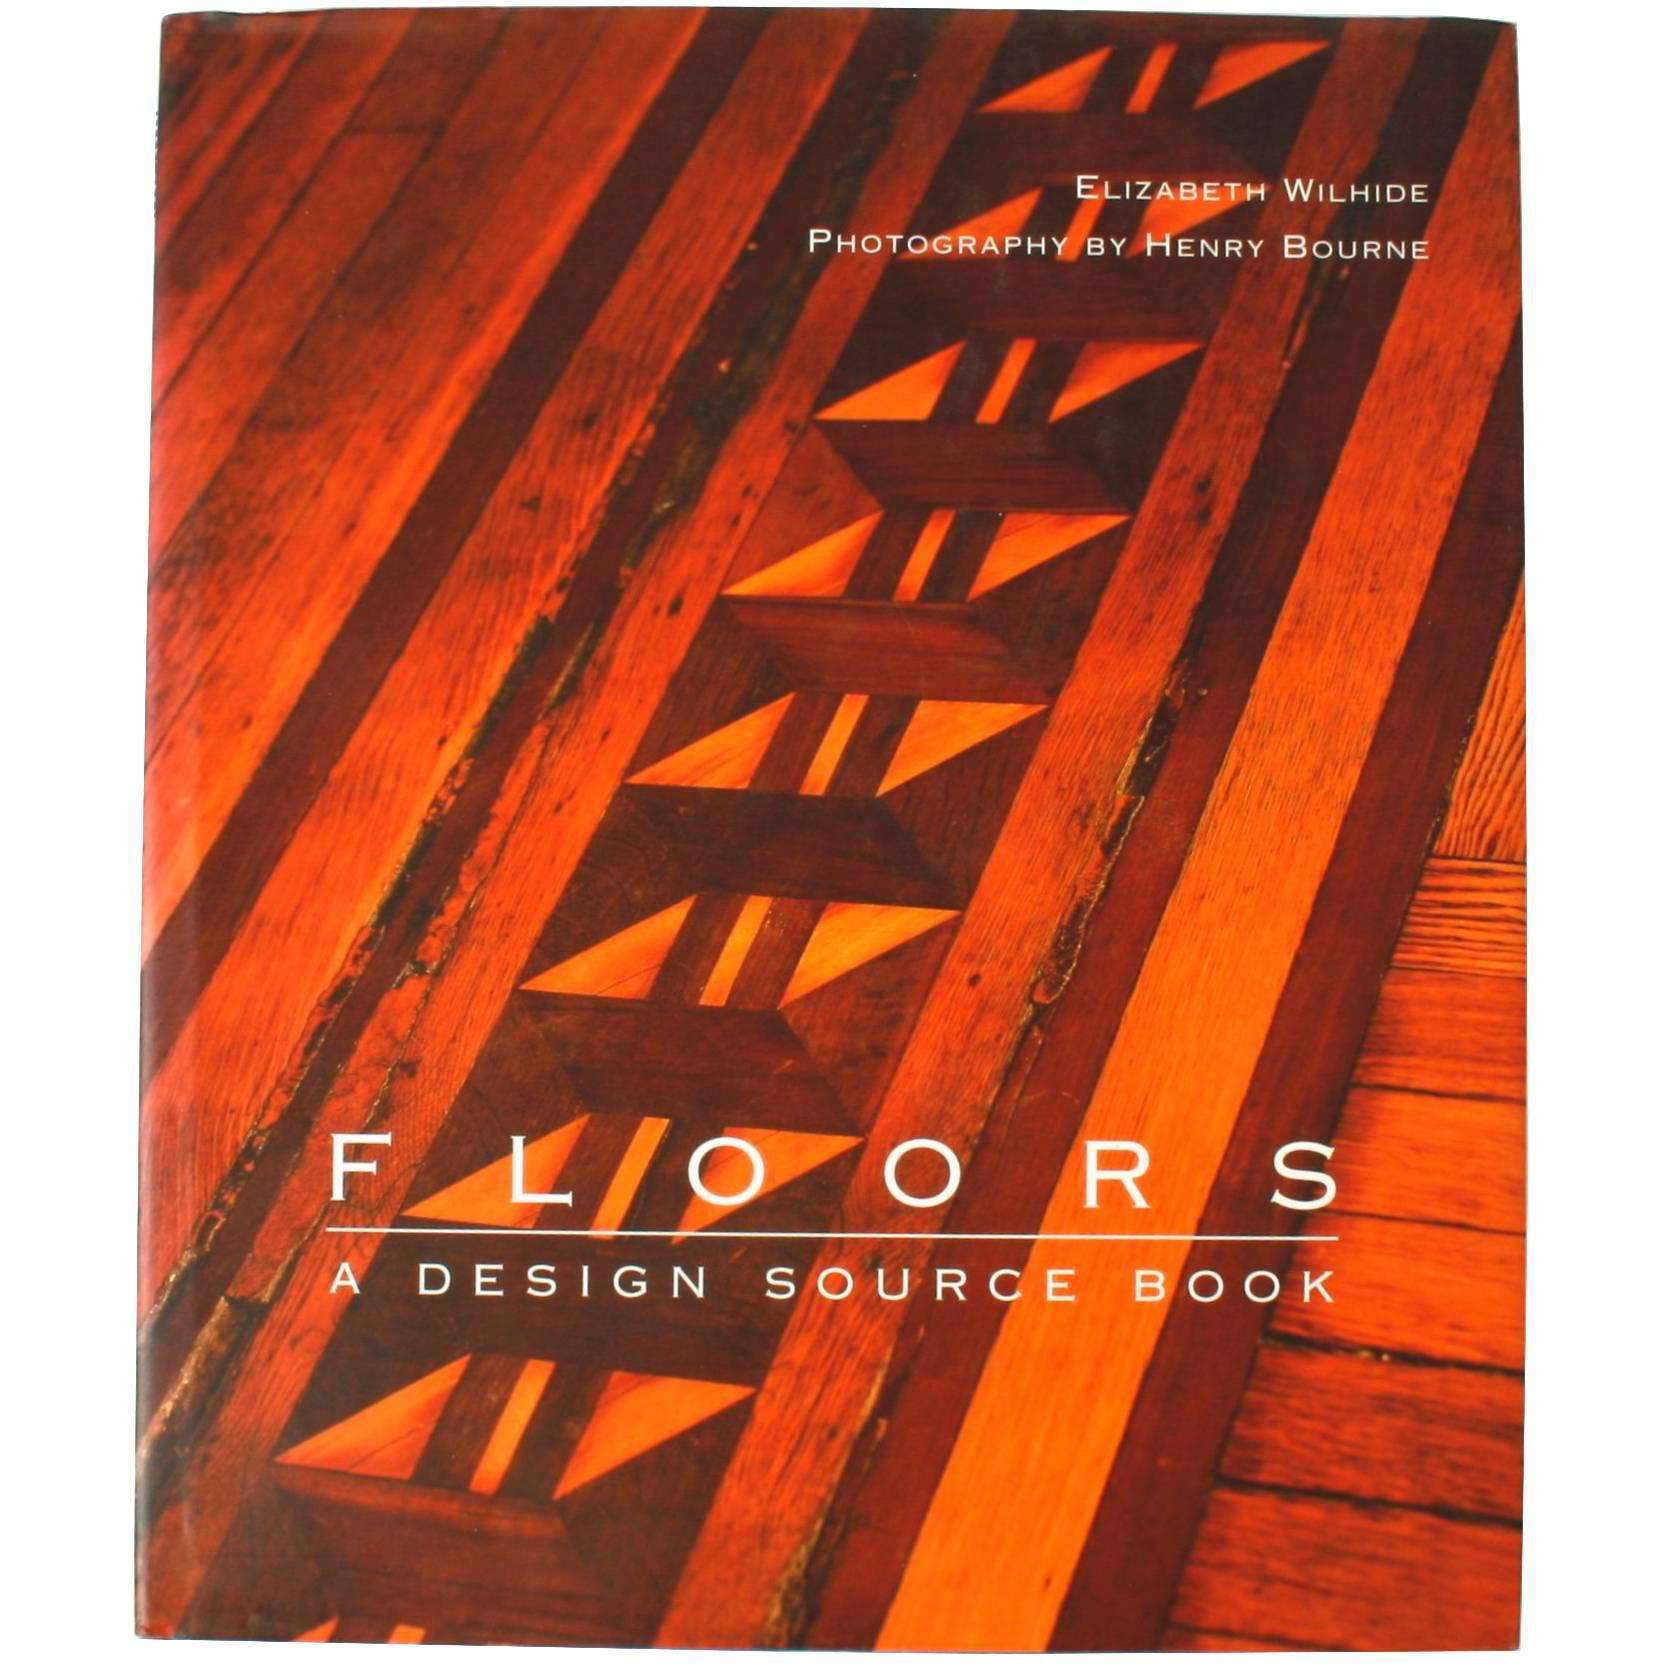 « Floors, a Design Source Book » d'Elizabeth Wilhide, première édition